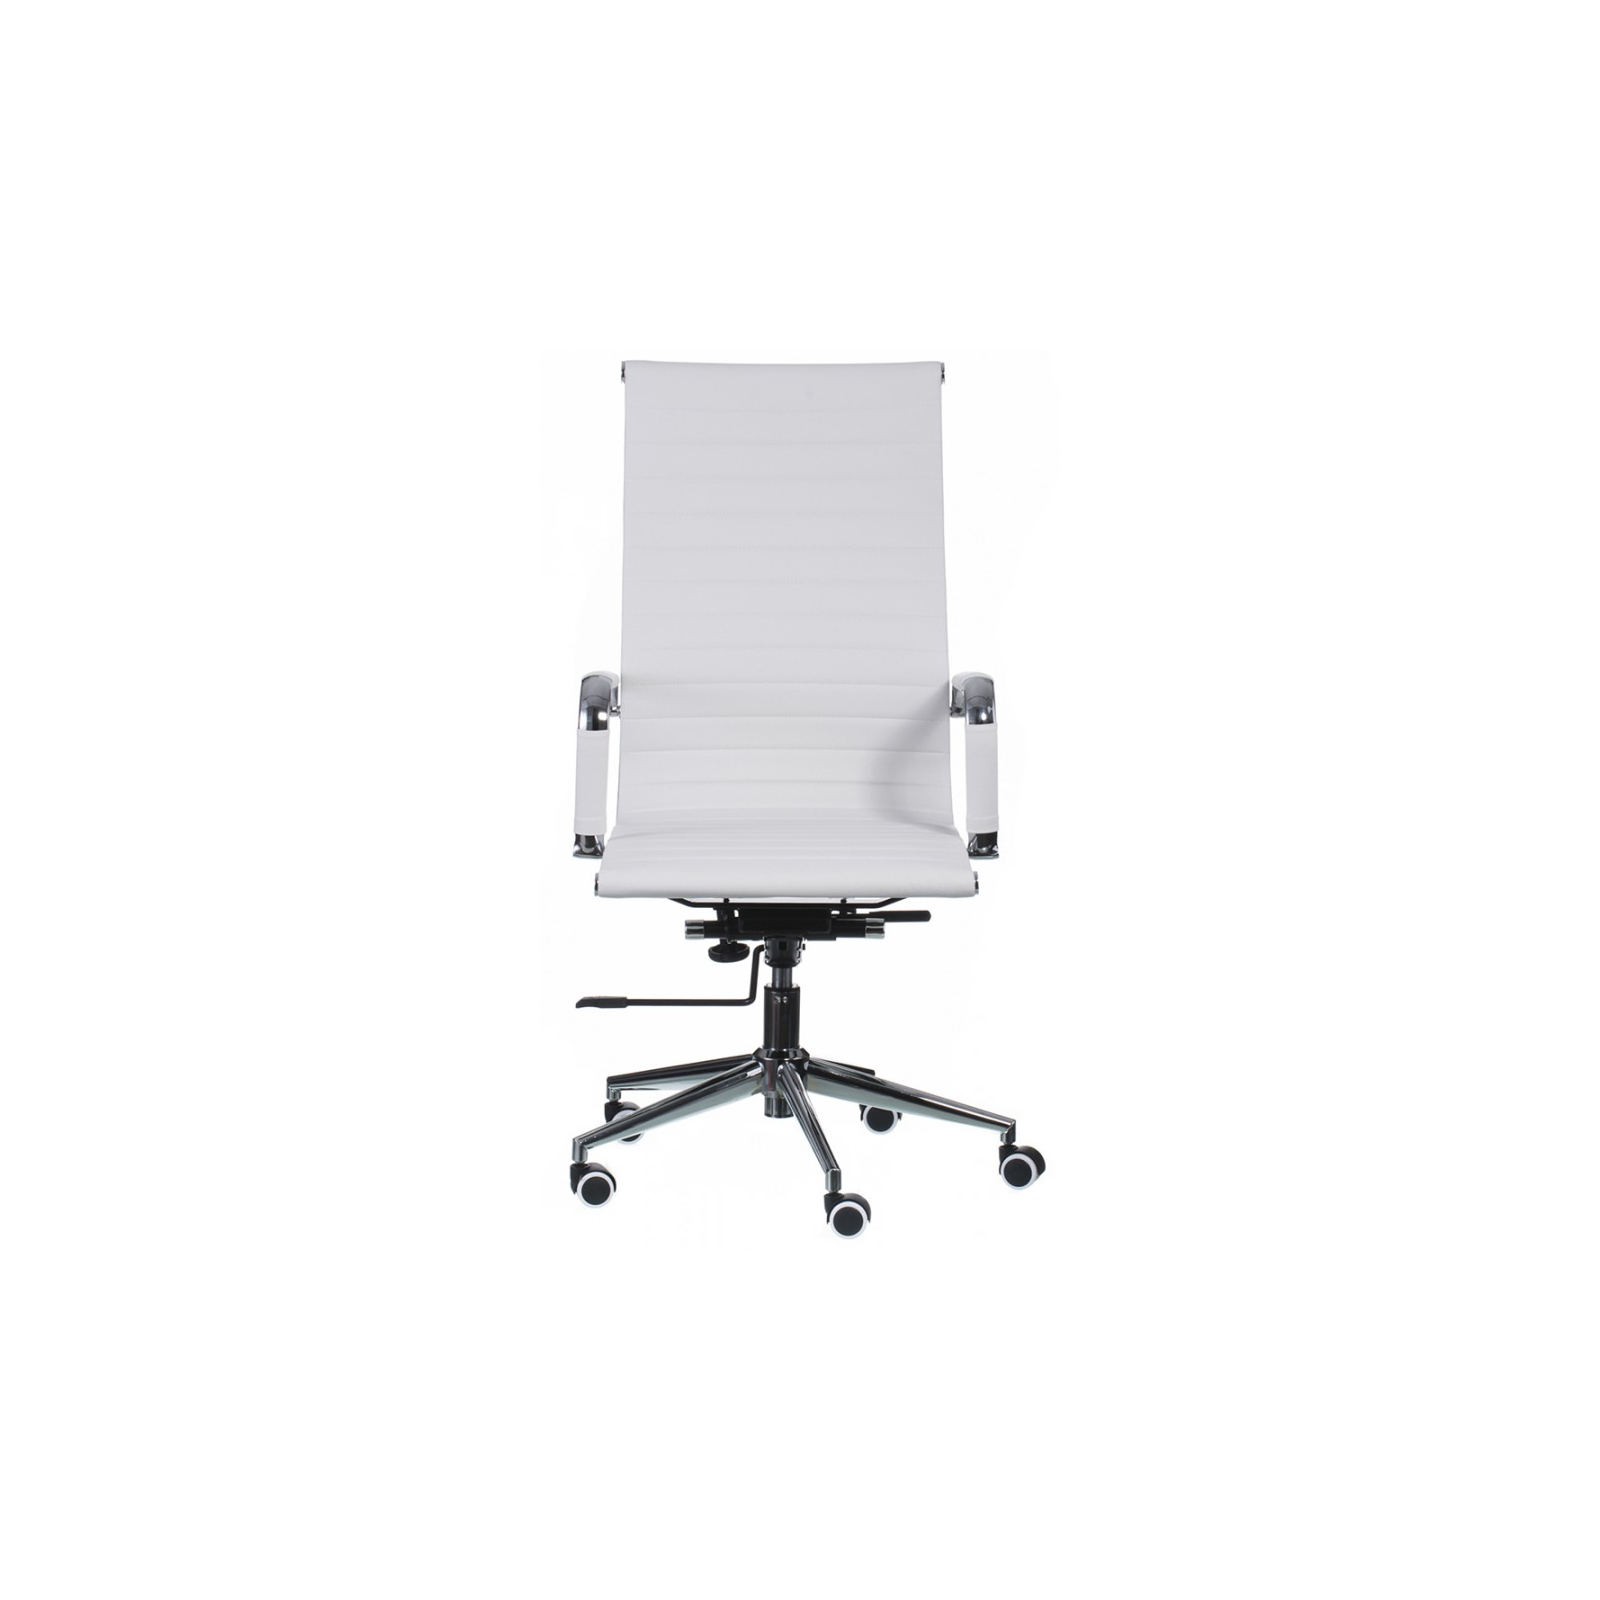 Офисное кресло Special4You Solano artleather white (000002576) изображение 2